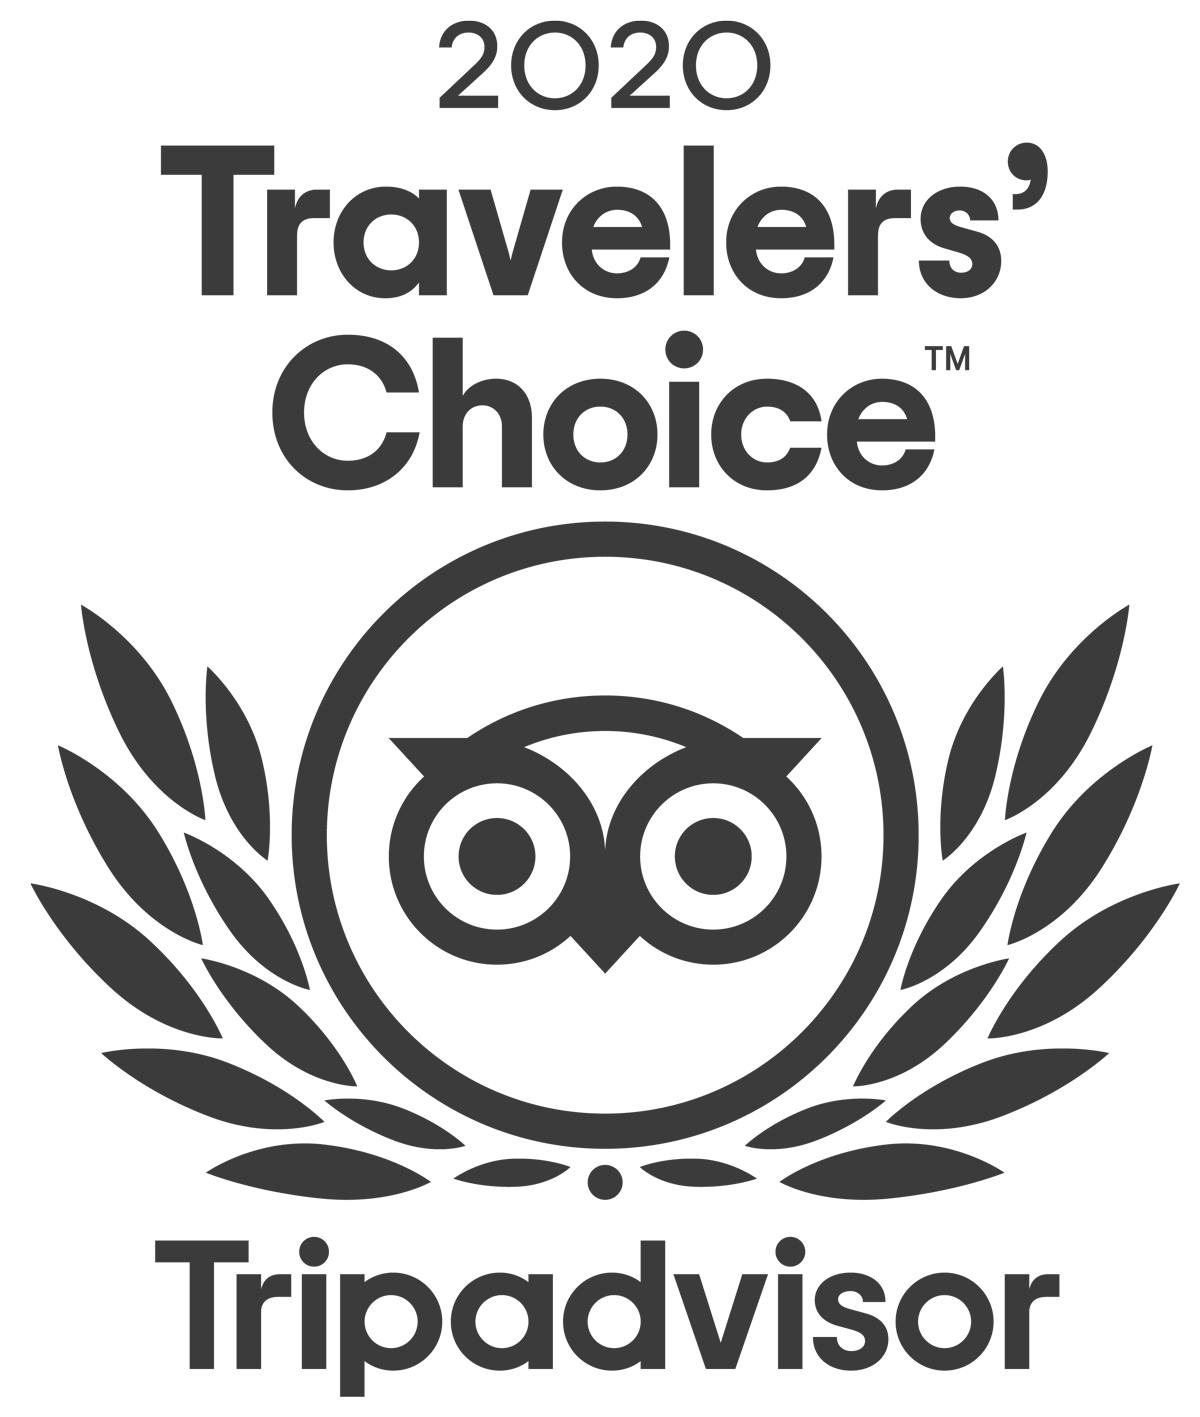 Trip Advisor  Traveler's Choice Award 2020